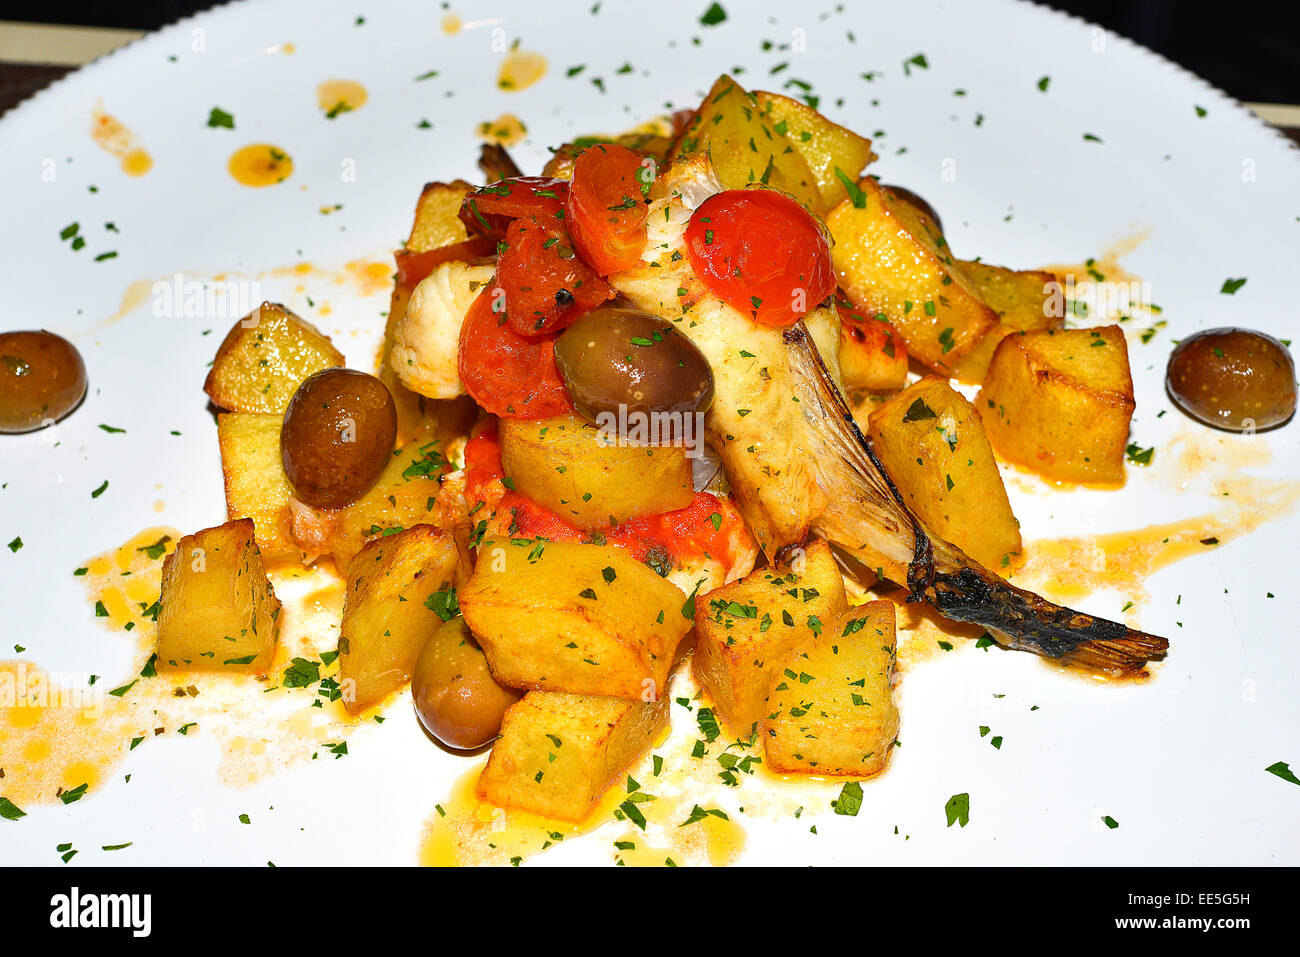 Italy Puglia Apulia Polignano a Mare Rombo alla pescatrice or turbot fish  is a local dish Stock Photo - Alamy